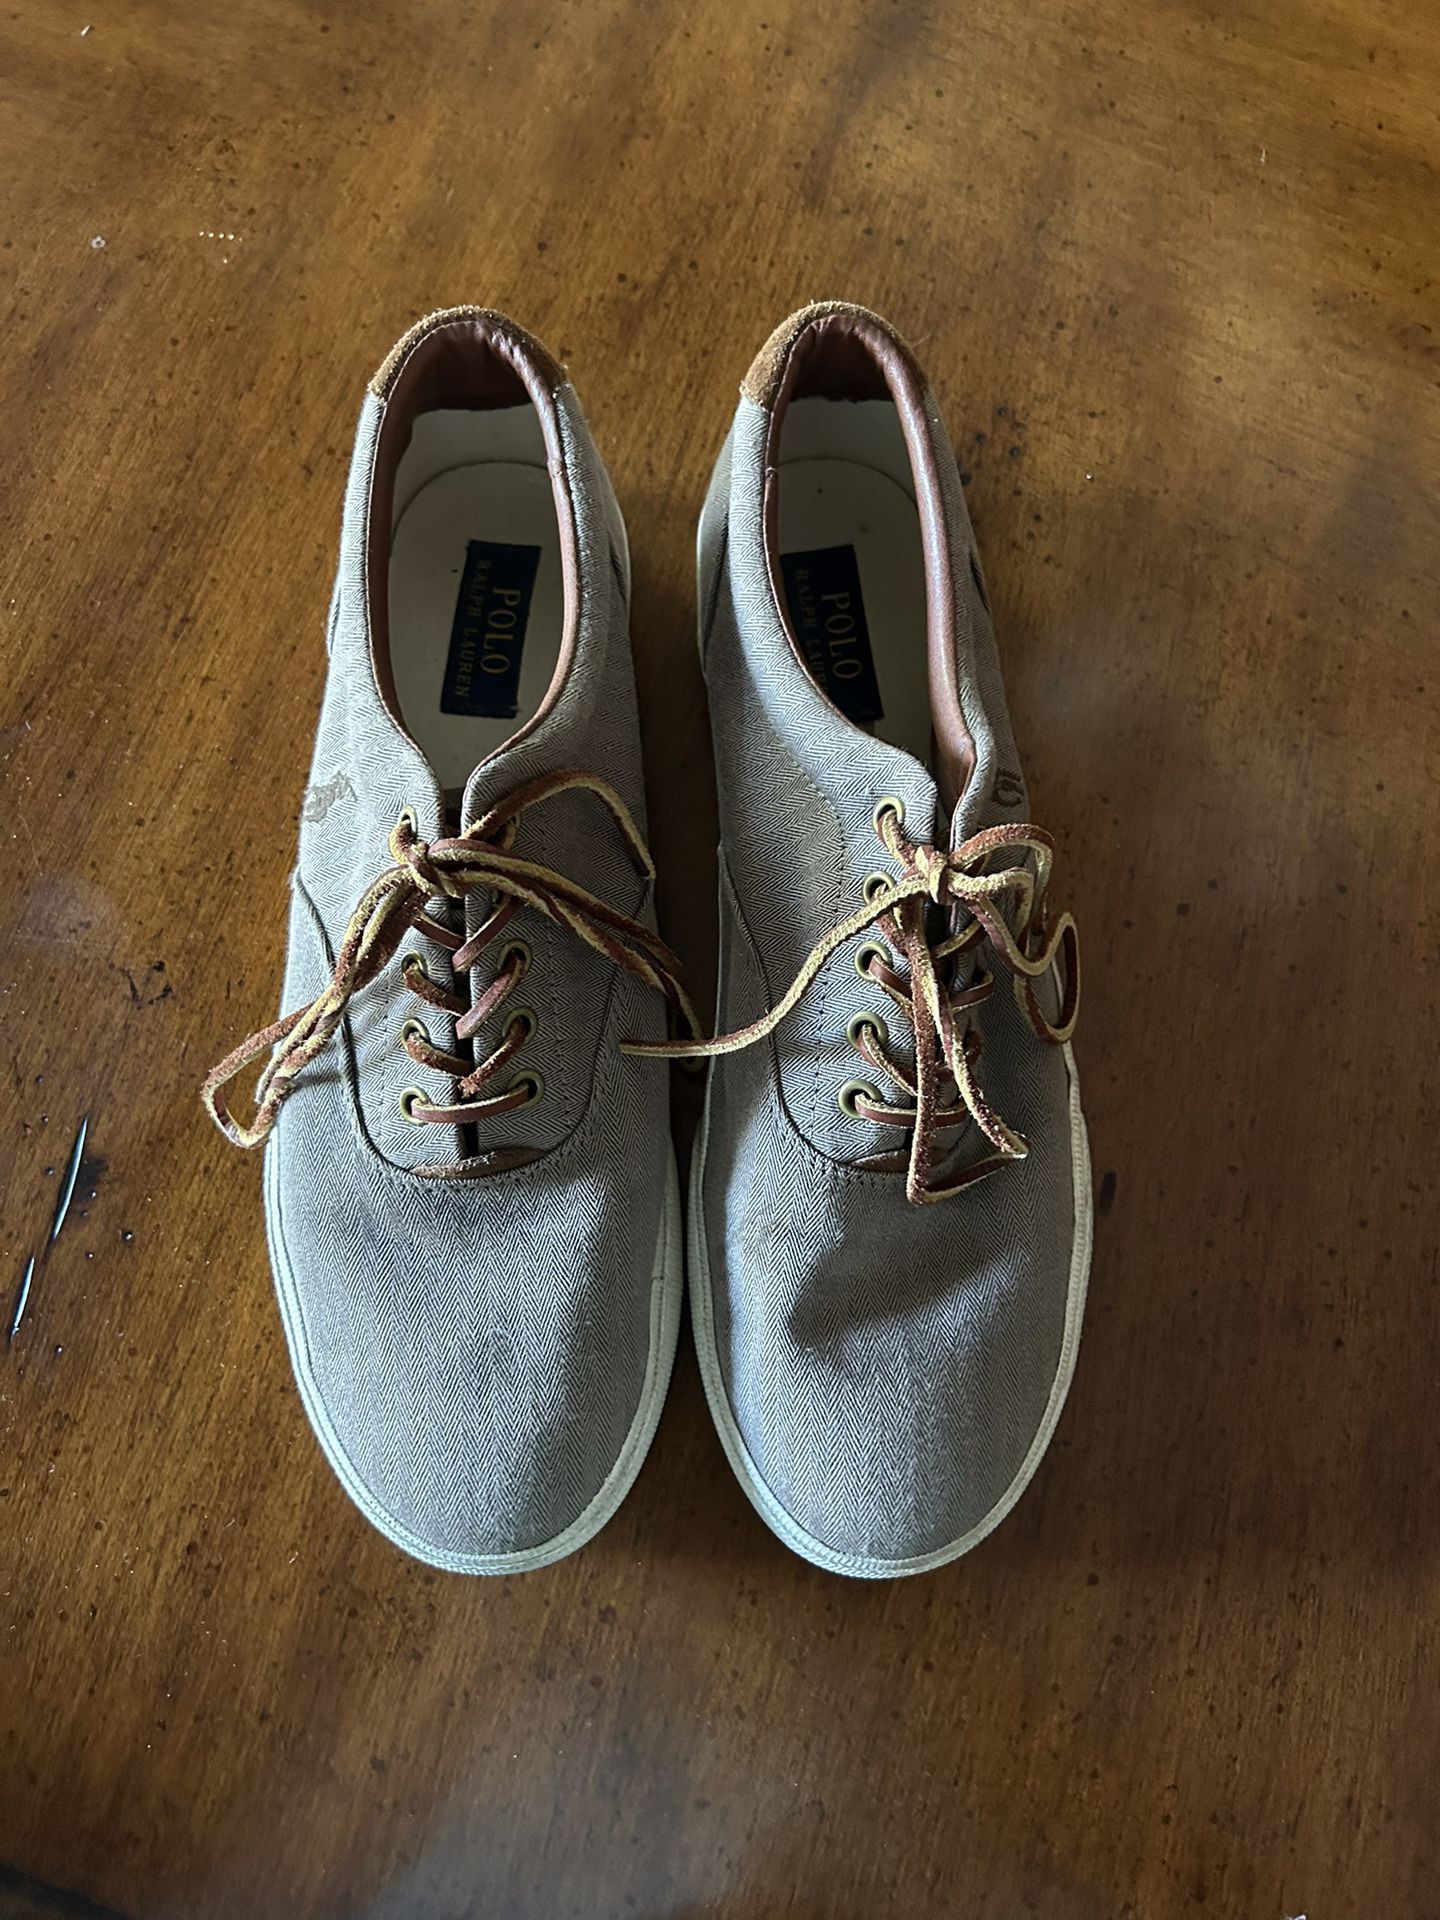 Polo Shoes Gray Size 11